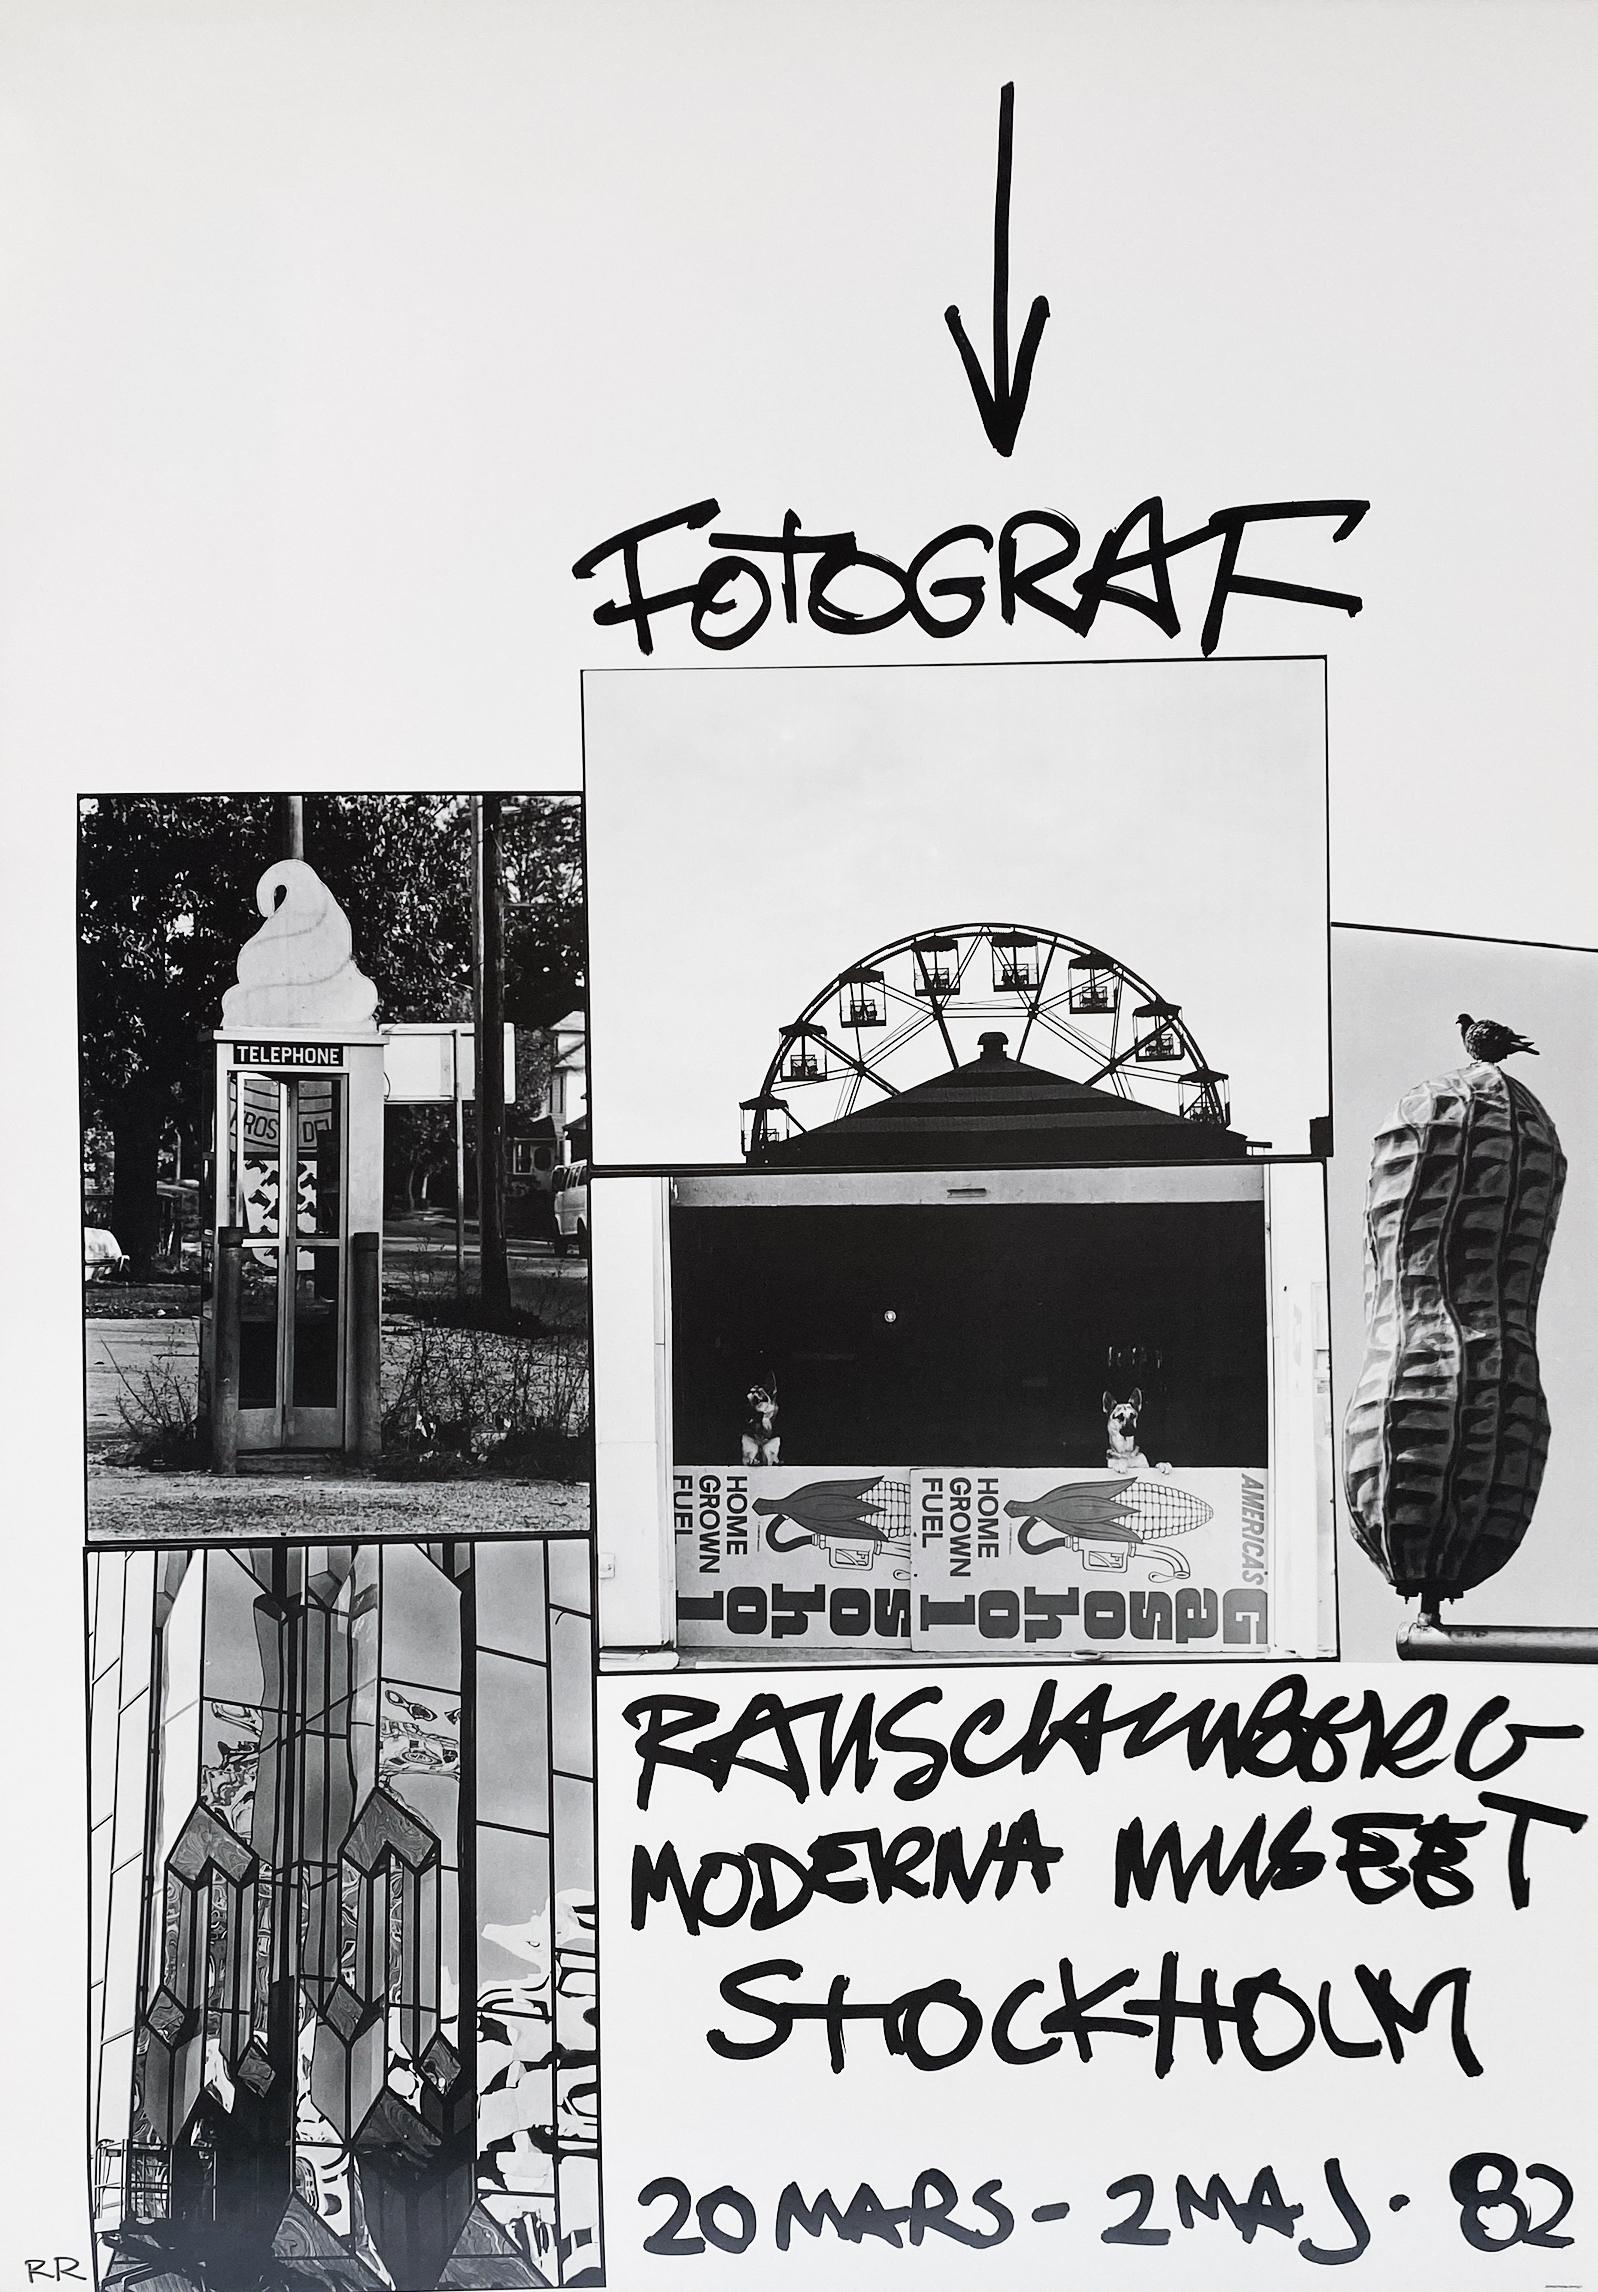 Robert Rauschenberg, Fotograf, 1982 Exhibition Poster - Art by (After) Robert Rauschenberg